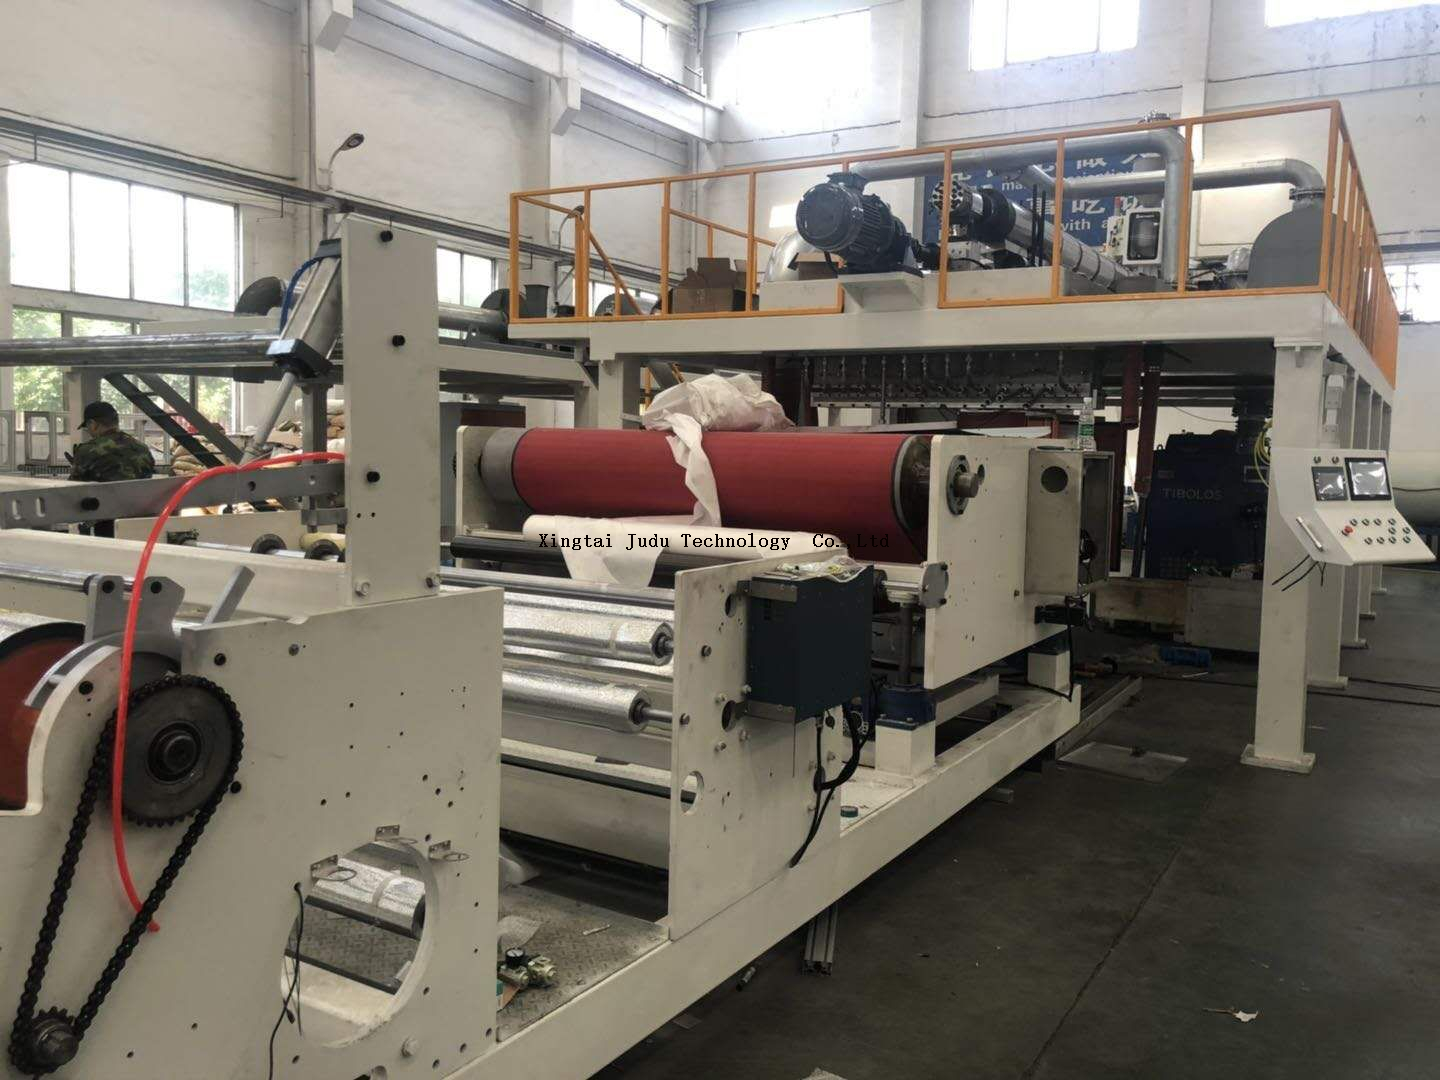 Máquina de tela no tejida meltblown de 1600 mm, máquina para fabricar telas sopladas en fusión, línea de producción de pp